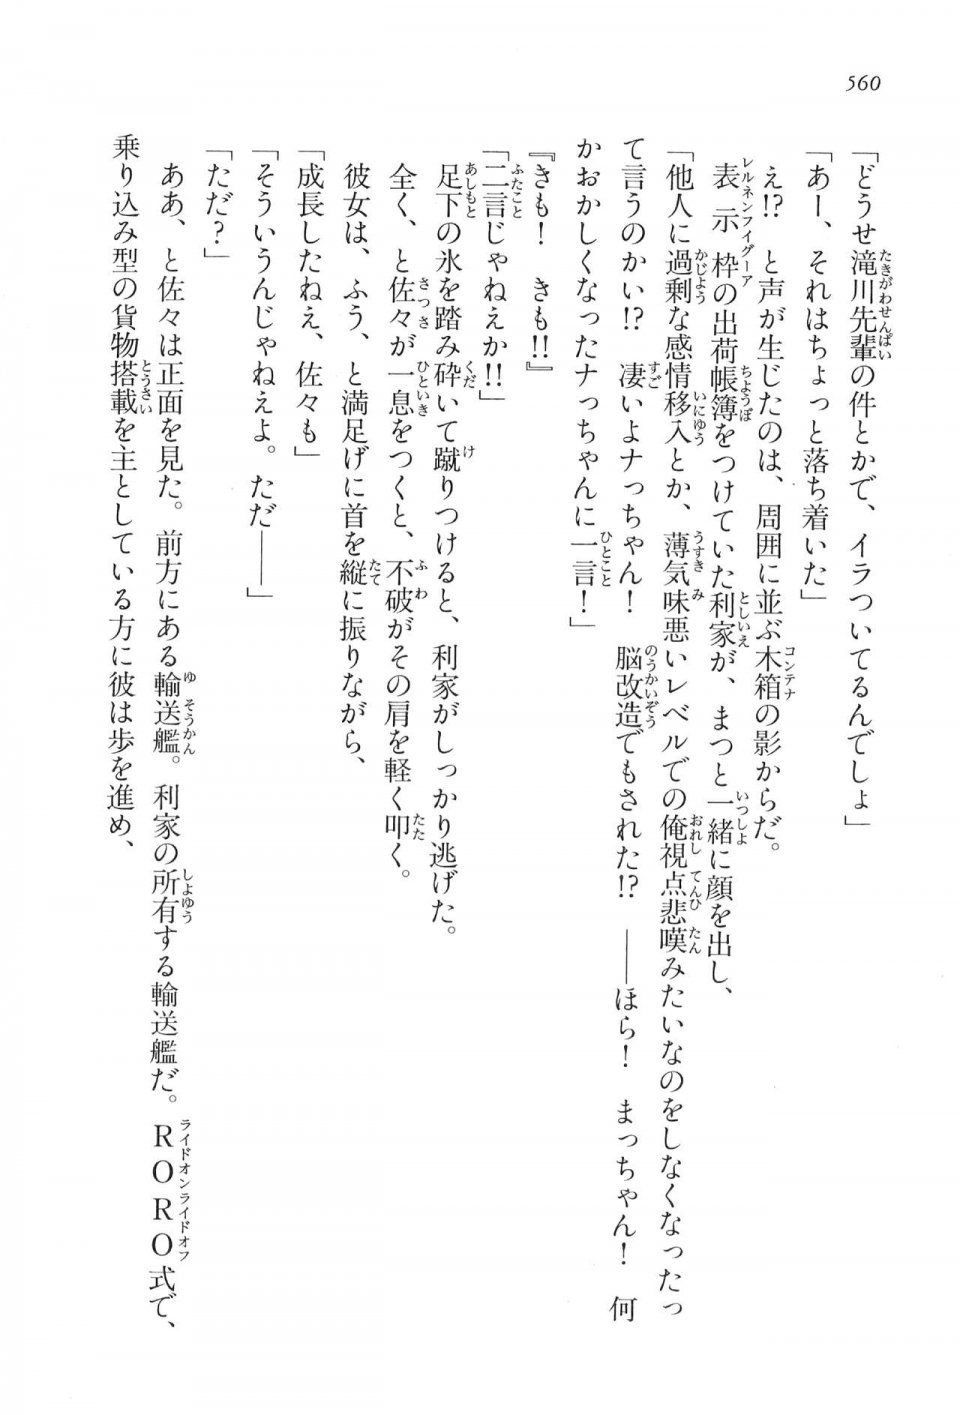 Kyoukai Senjou no Horizon LN Vol 16(7A) - Photo #560